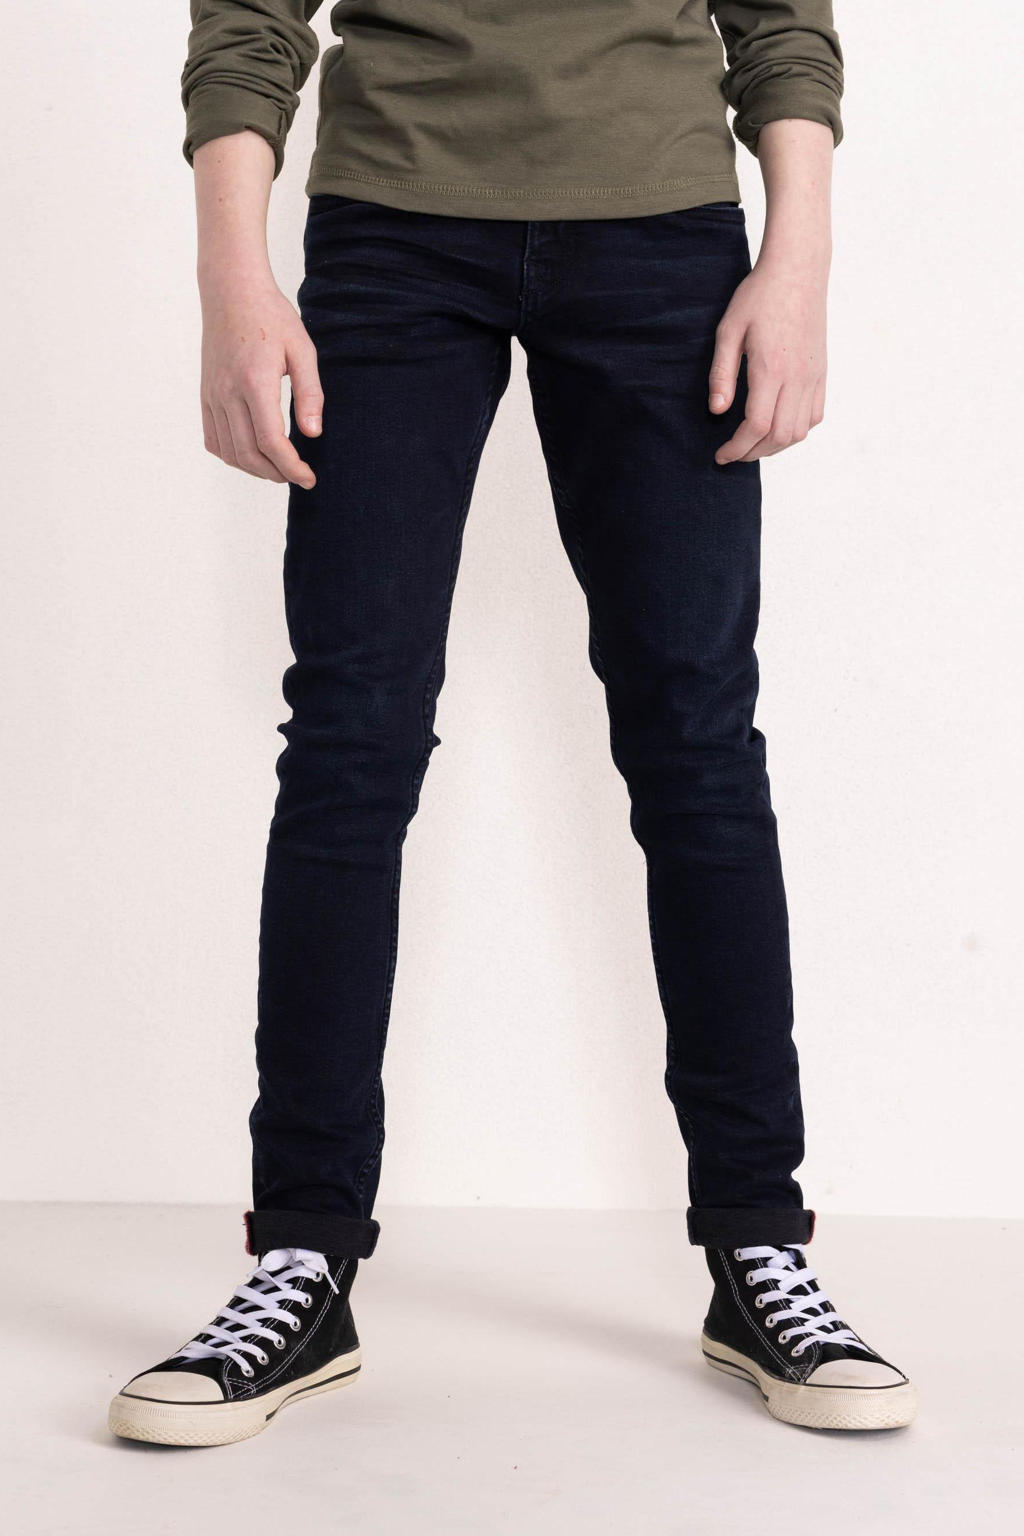 Petrol Industries slim fit jeans Seaham blue black